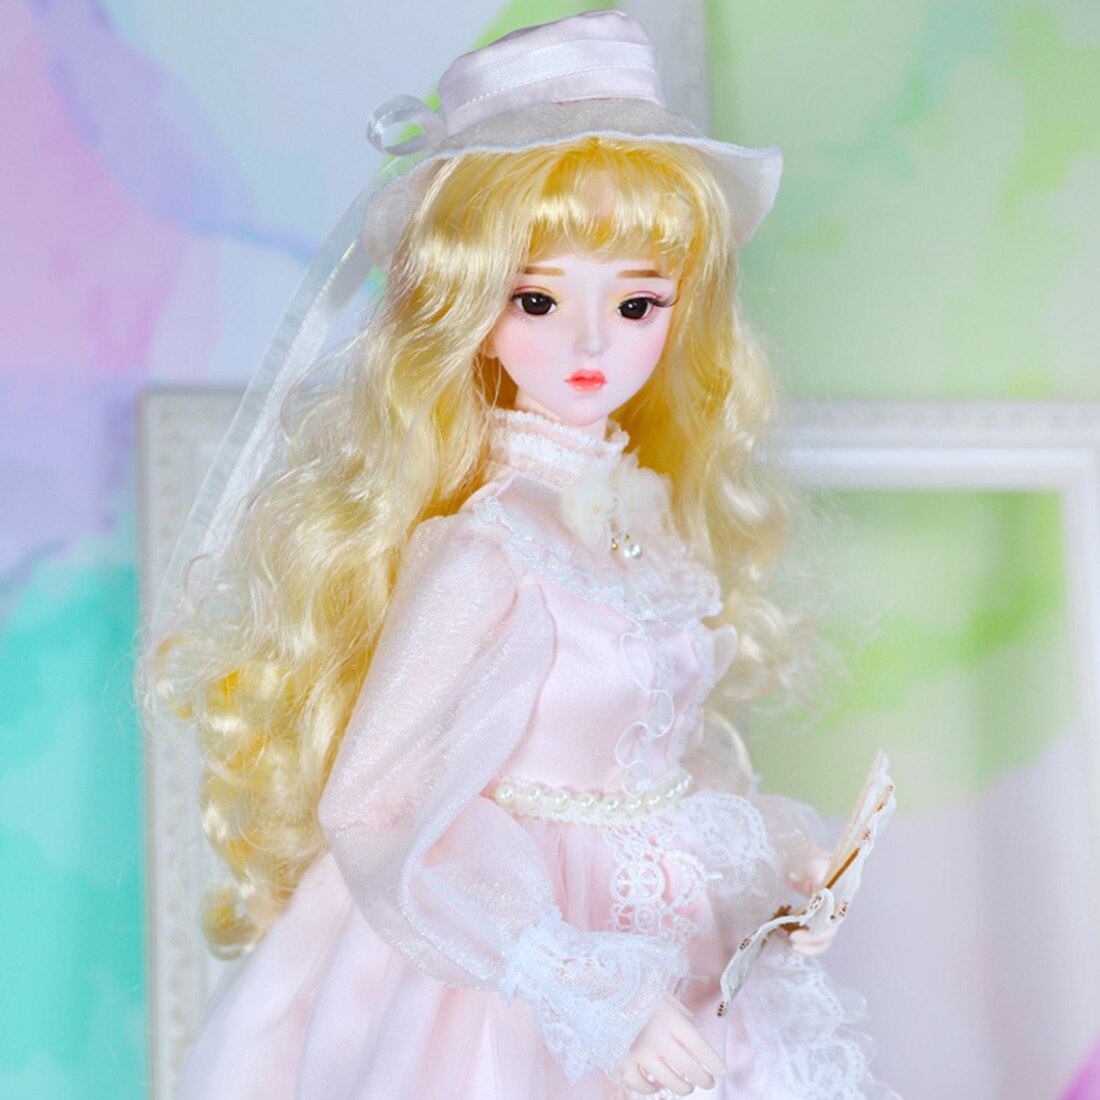 60センチメートルbjd人形姫の人形の服セット子供のためのおもちゃ-ニコール公式メイク (顔取り外し可能なバージョン) (ヘッド統合)